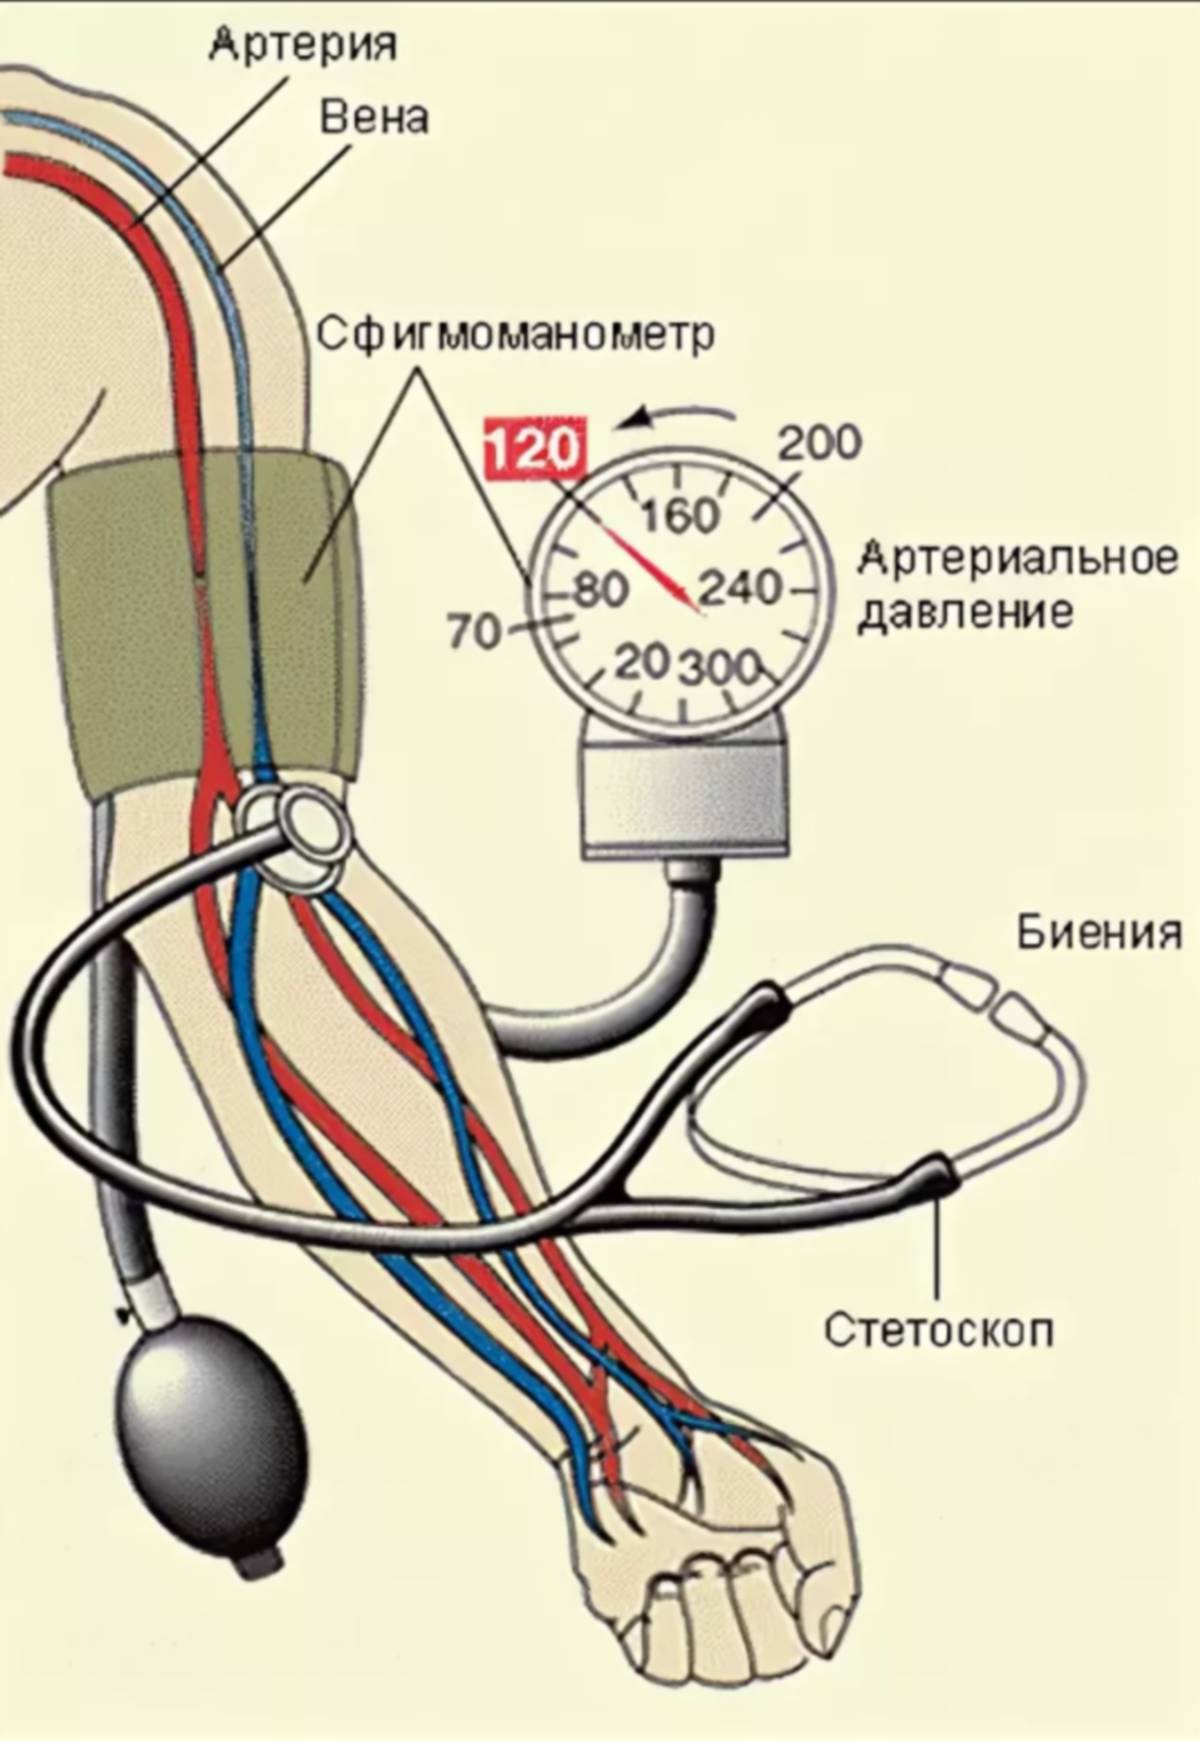 Как работает измерение давления. Измерение артериального давления механическим тонометром алгоритм. Измерение артериального давления на плечевой артерии. Схема измерения артериального давления тонометром. Алгоритм измерения давления механическим тонометром.